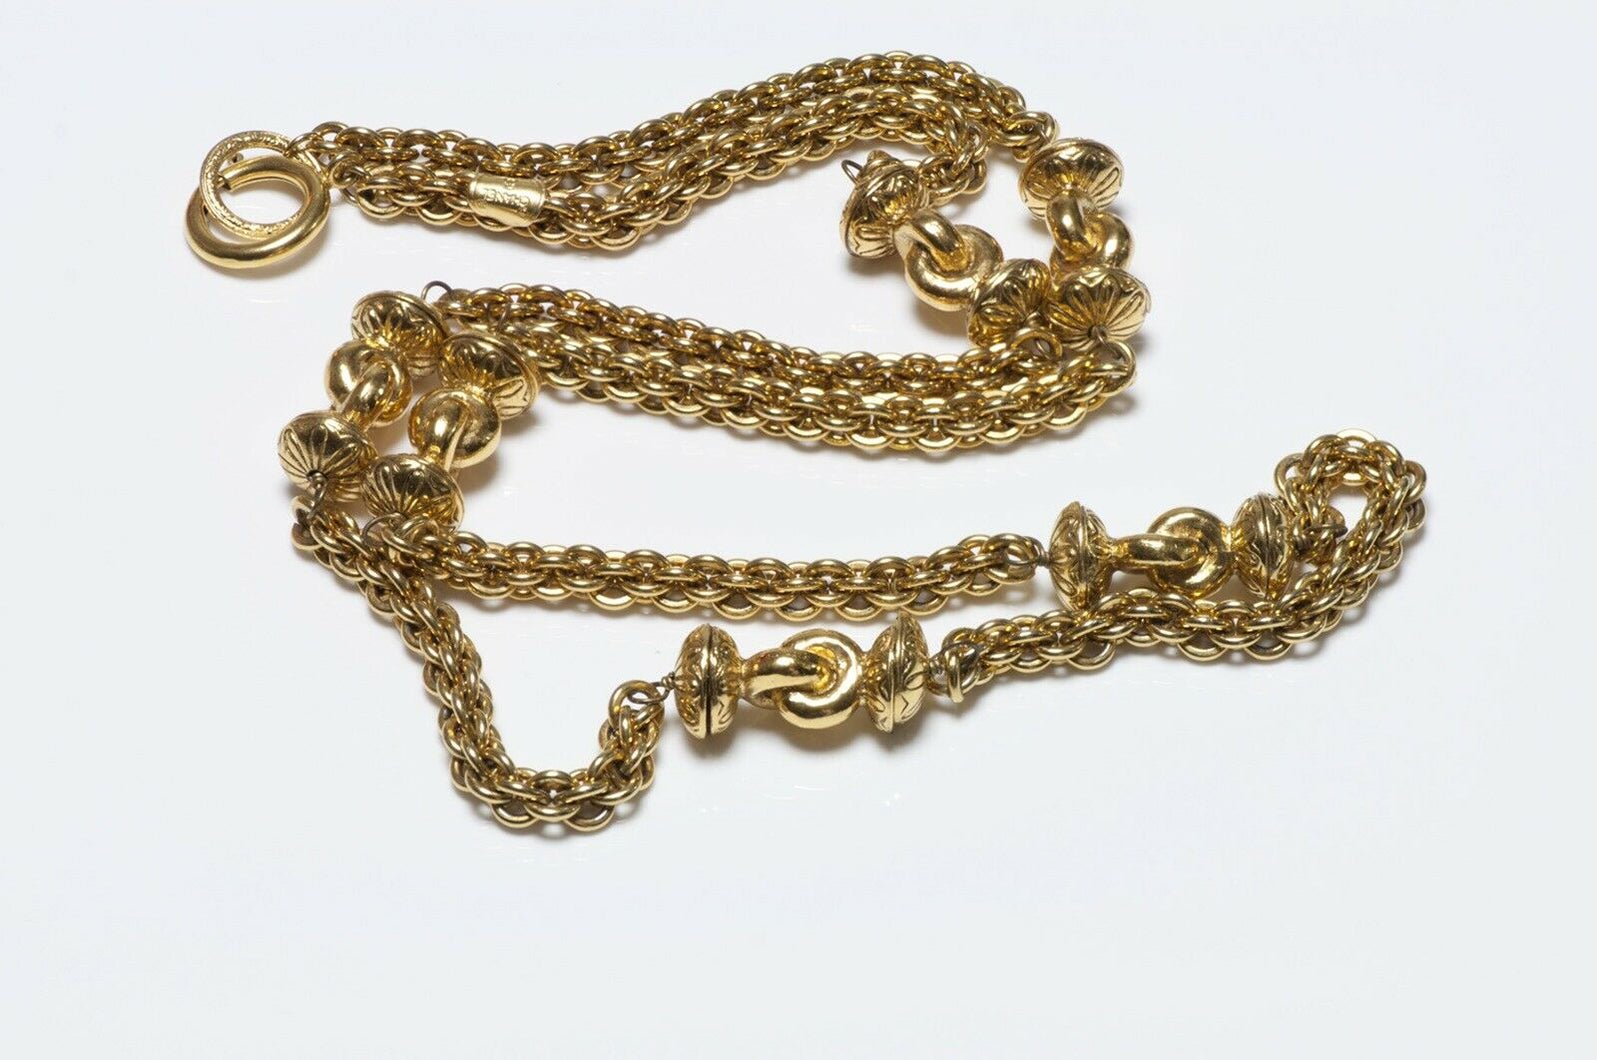 CHANEL Paris 1970’s Byzantine Style Sautoir Chain Necklace